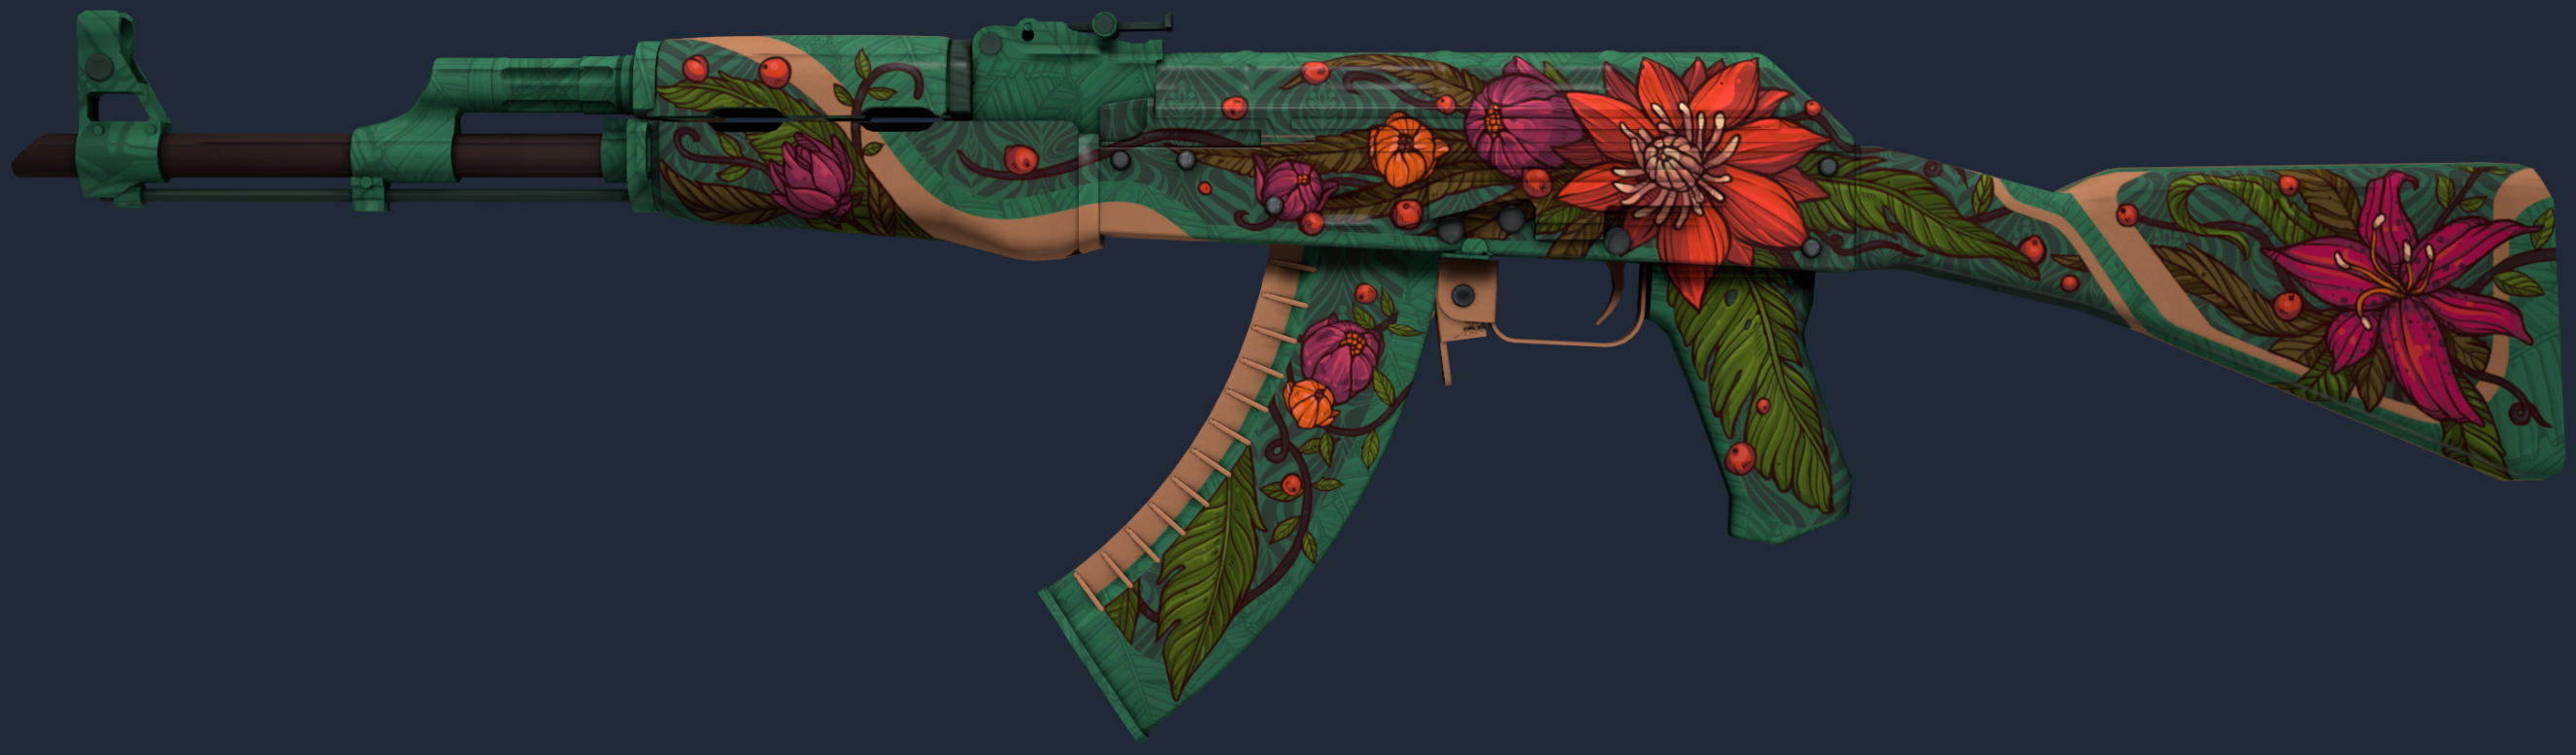 AK-47 | Vild lotus